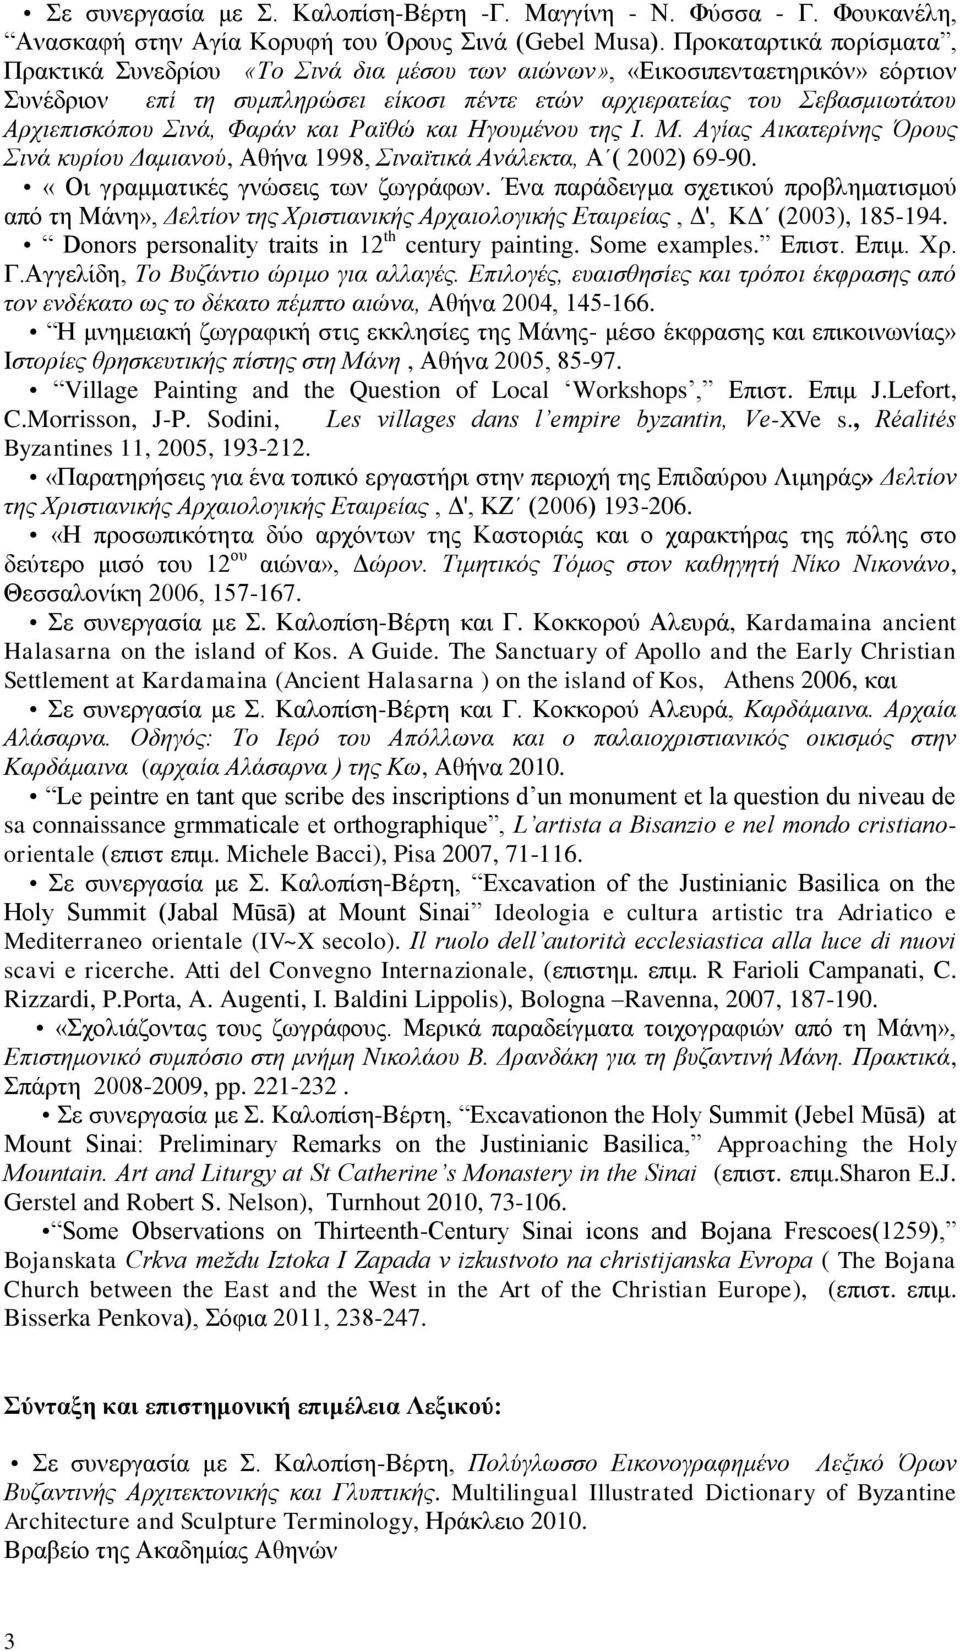 Σινά, Φαράν και Ραϊθώ και Ηγουμένου της Ι. Μ. Αγίας Αικατερίνης Όρους Σινά κυρίου Δαμιανού, Αθήνα 1998, Σιναϊτικά Ανάλεκτα, Α ( 2002) 69-90. «Οι γραμματικές γνώσεις των ζωγράφων.